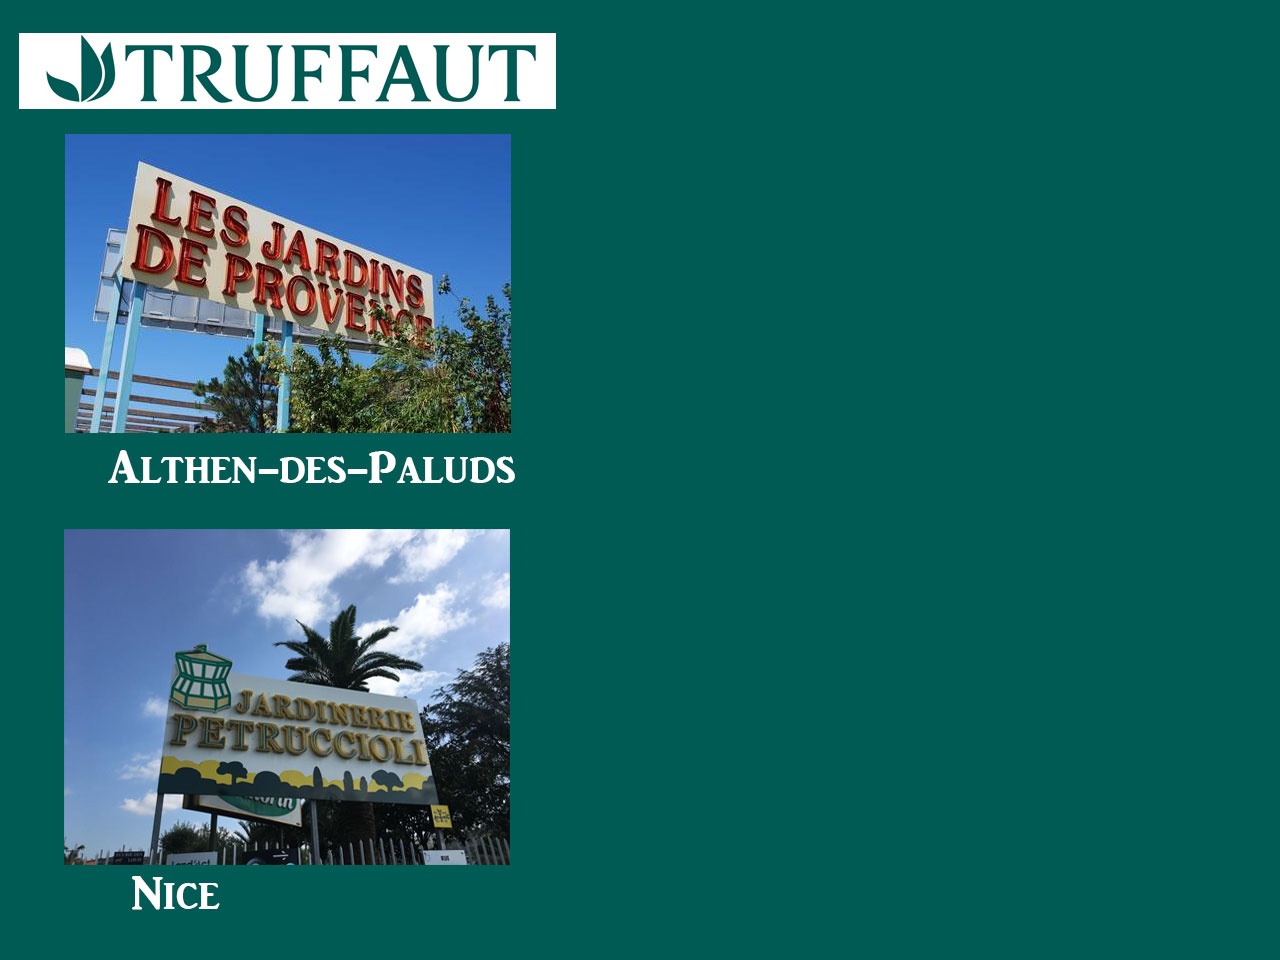 Truffaut, avec l’acquisition des Jardins de Provence et la Jardinerie Petruccioli, renforce sa présence dans le sud